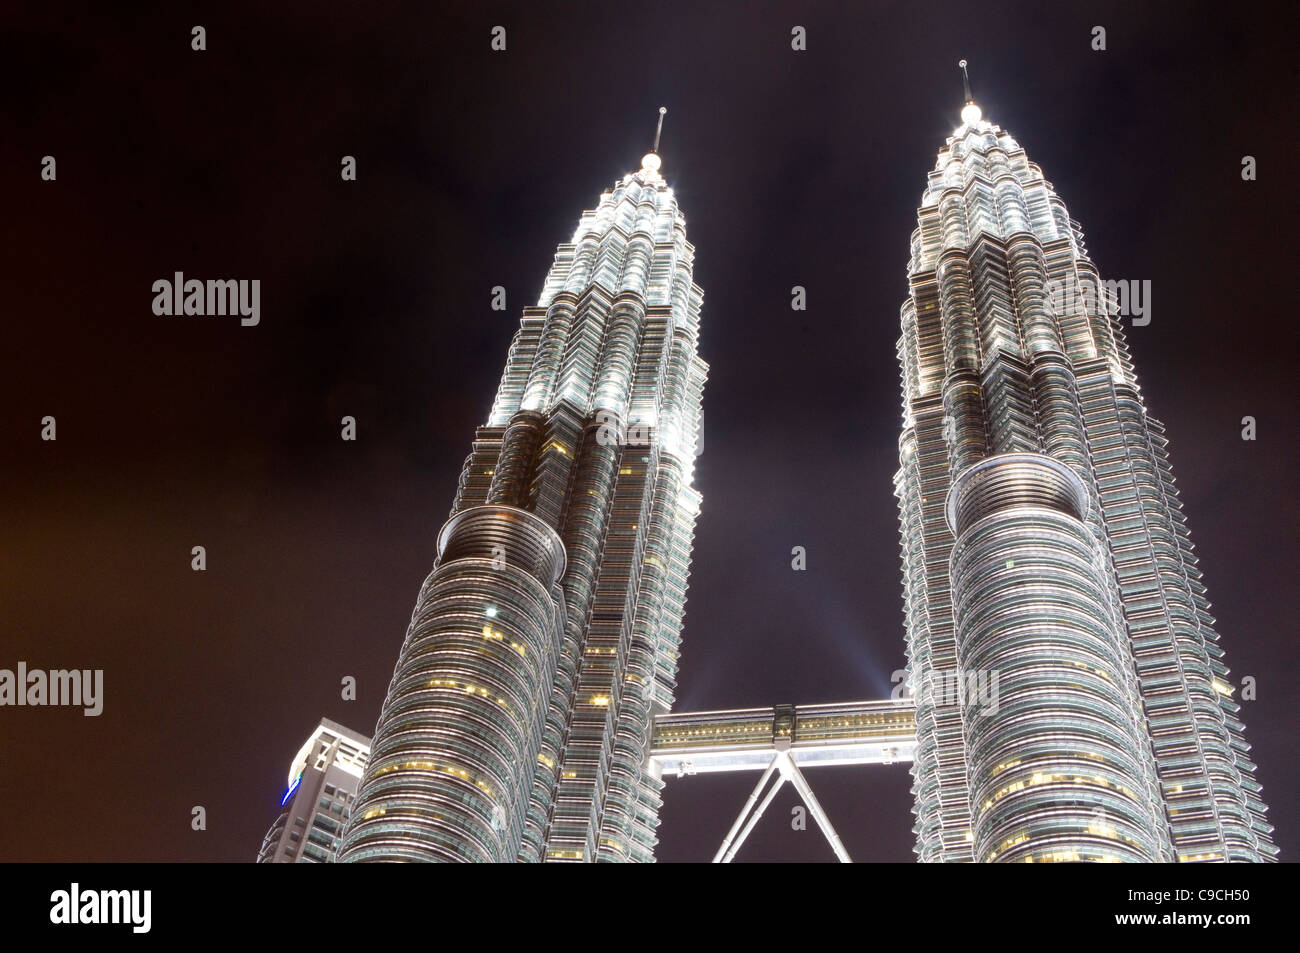 Petronas twin towers in Kuala Lumpur at night time. Stock Photo